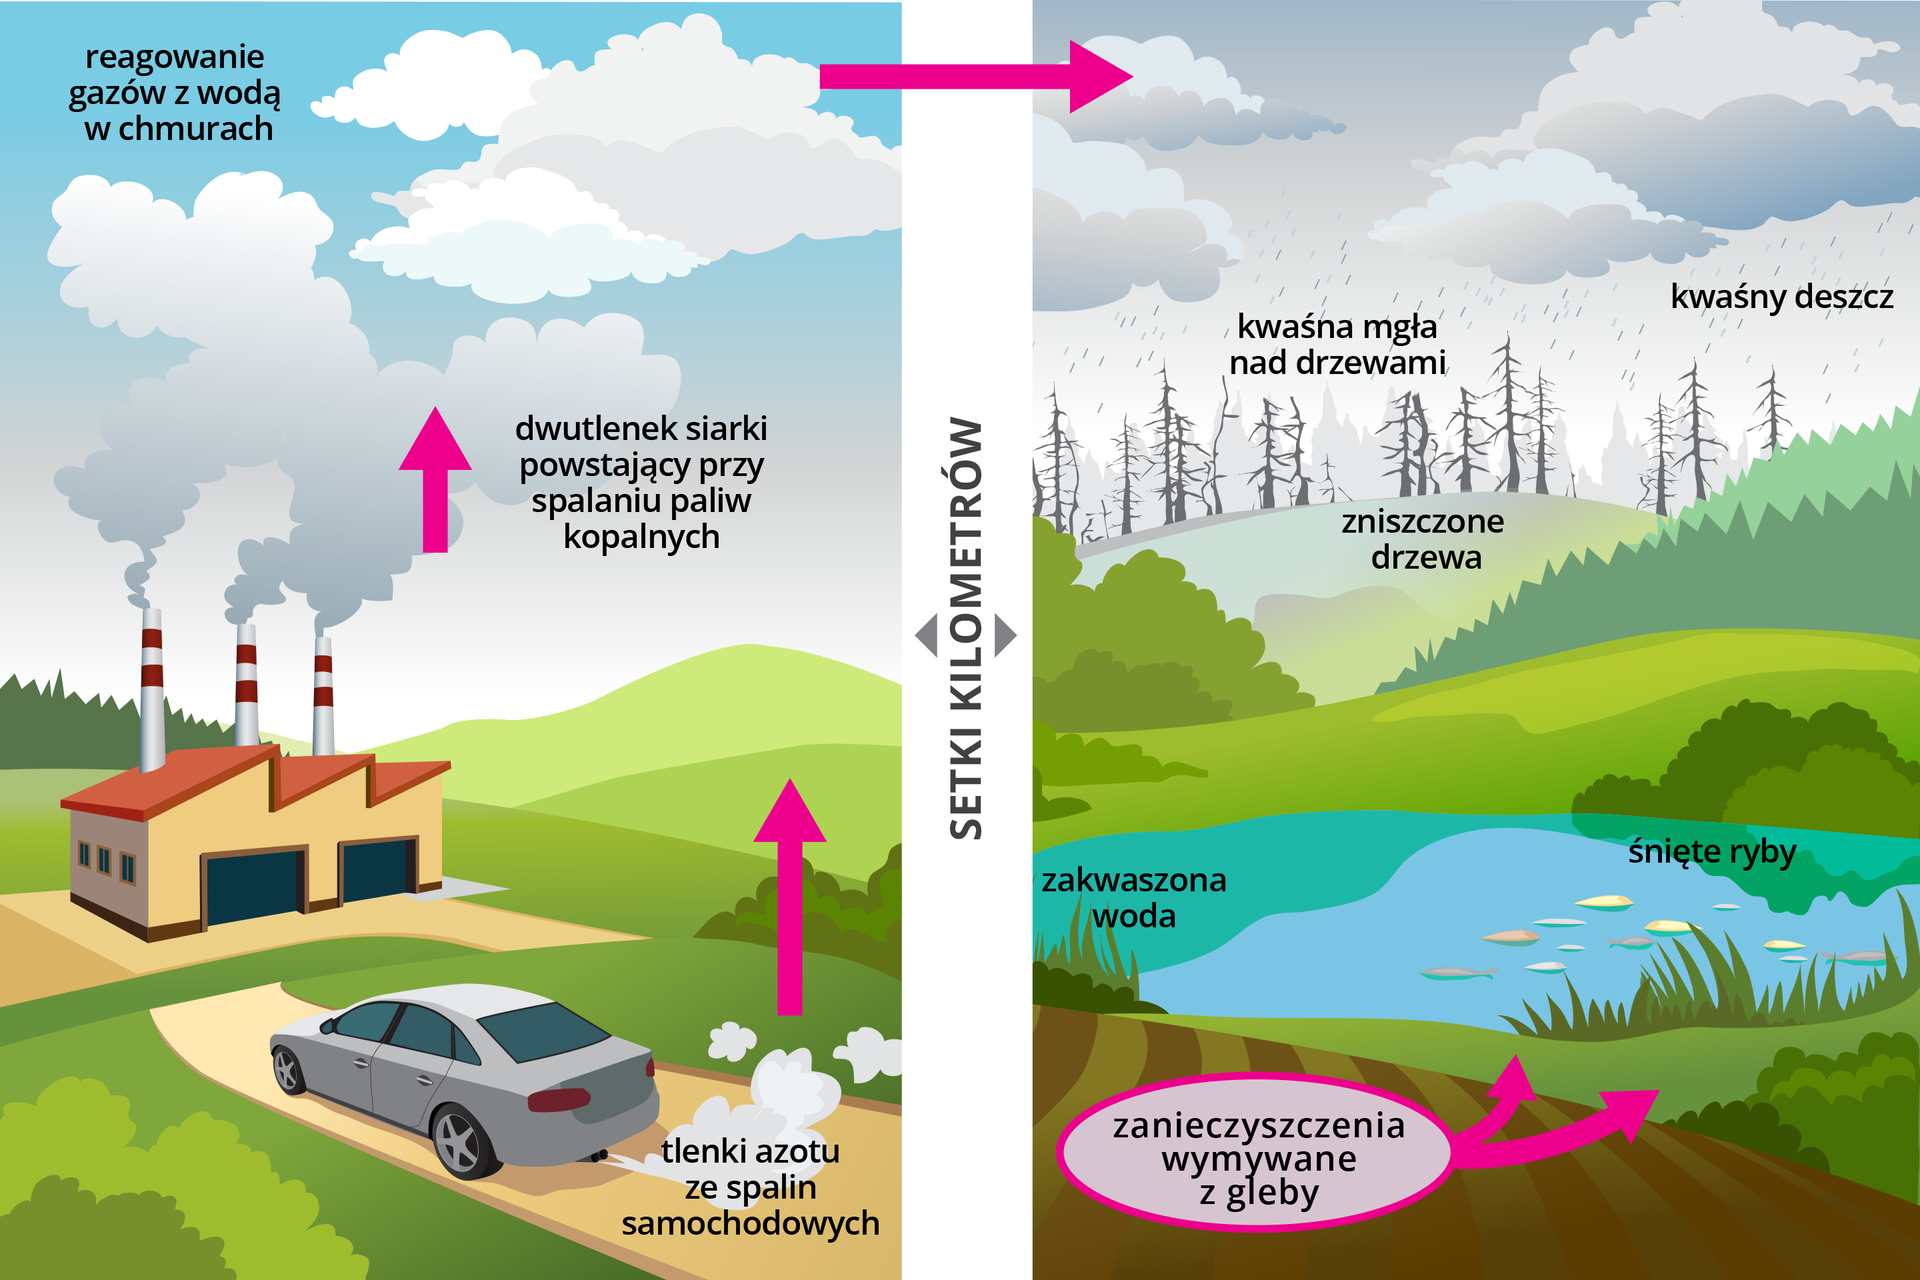 Dwie ilustracje przedstawiają przyczyny powstawania kwaśnych deszczy oraz skutki ich powstawania. Ilustracja po lewej stronie prezentuje samochód jadący drogą, z którego wydobywają się spaliny z tlenkami azotu. Naprzeciwko drogi znajduje się fabryka, z której wydobywaja się dym zawierający dwutlenek siarki. Ilustracja po prawej stronie ukazuje skutki zanieczyszczenia atmosfery w miejscach oddalonych setki kilometrów od źródeł zanieczyszczenia. Na ilustracji widoczne zniszczone drzewa opadami kwaśnych deszczy, zakwaszona woda w jeziorze i pływające przy powierzchni śnięte ryby oraz zanieczyszczenia wymywane z gleby do wód jeziora.